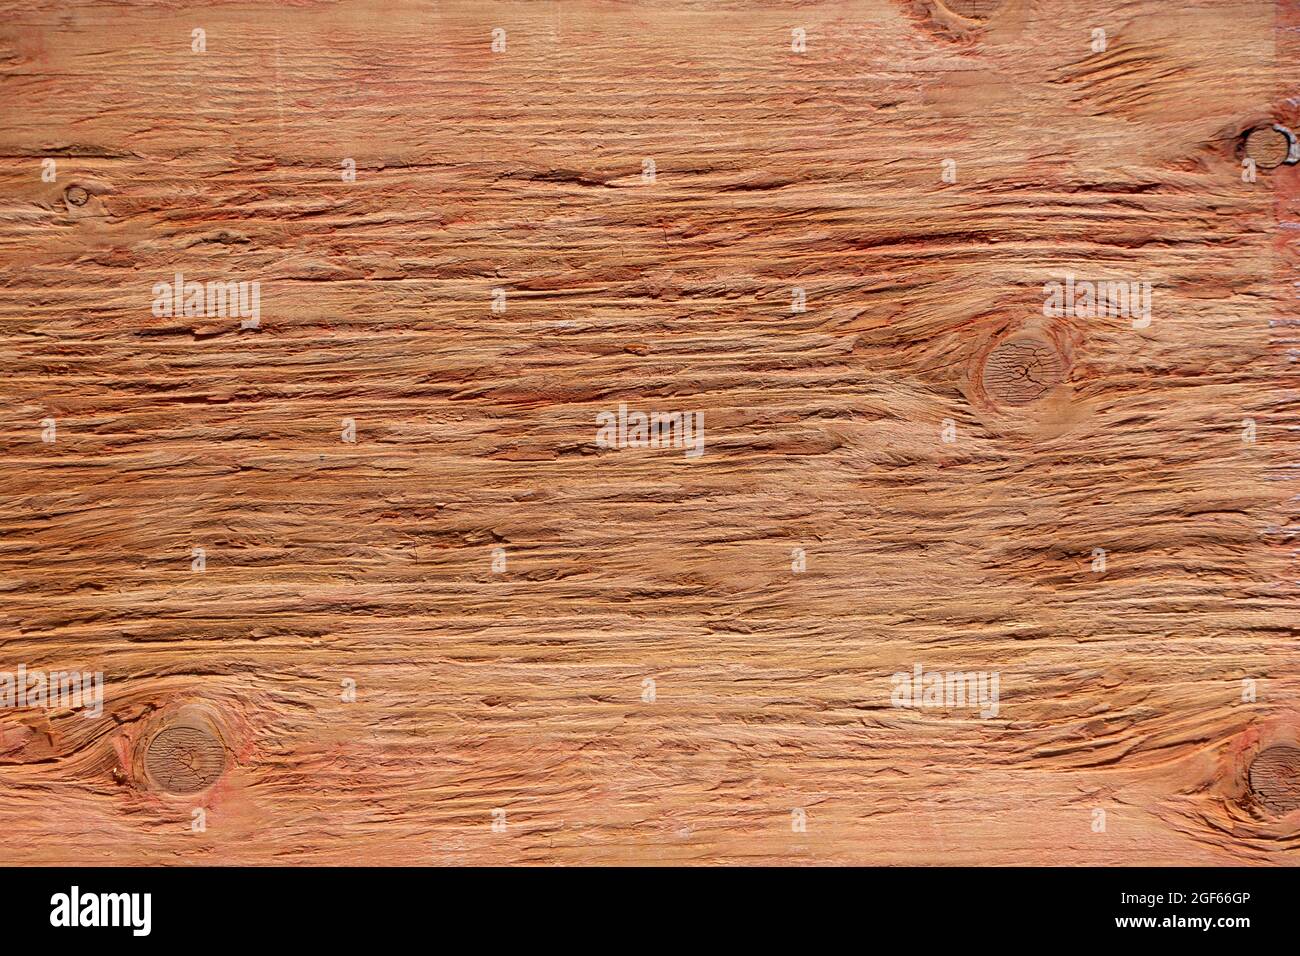 Gros plan d'une planche en bois à la texture de couleur riche et aux trous de nœud Banque D'Images